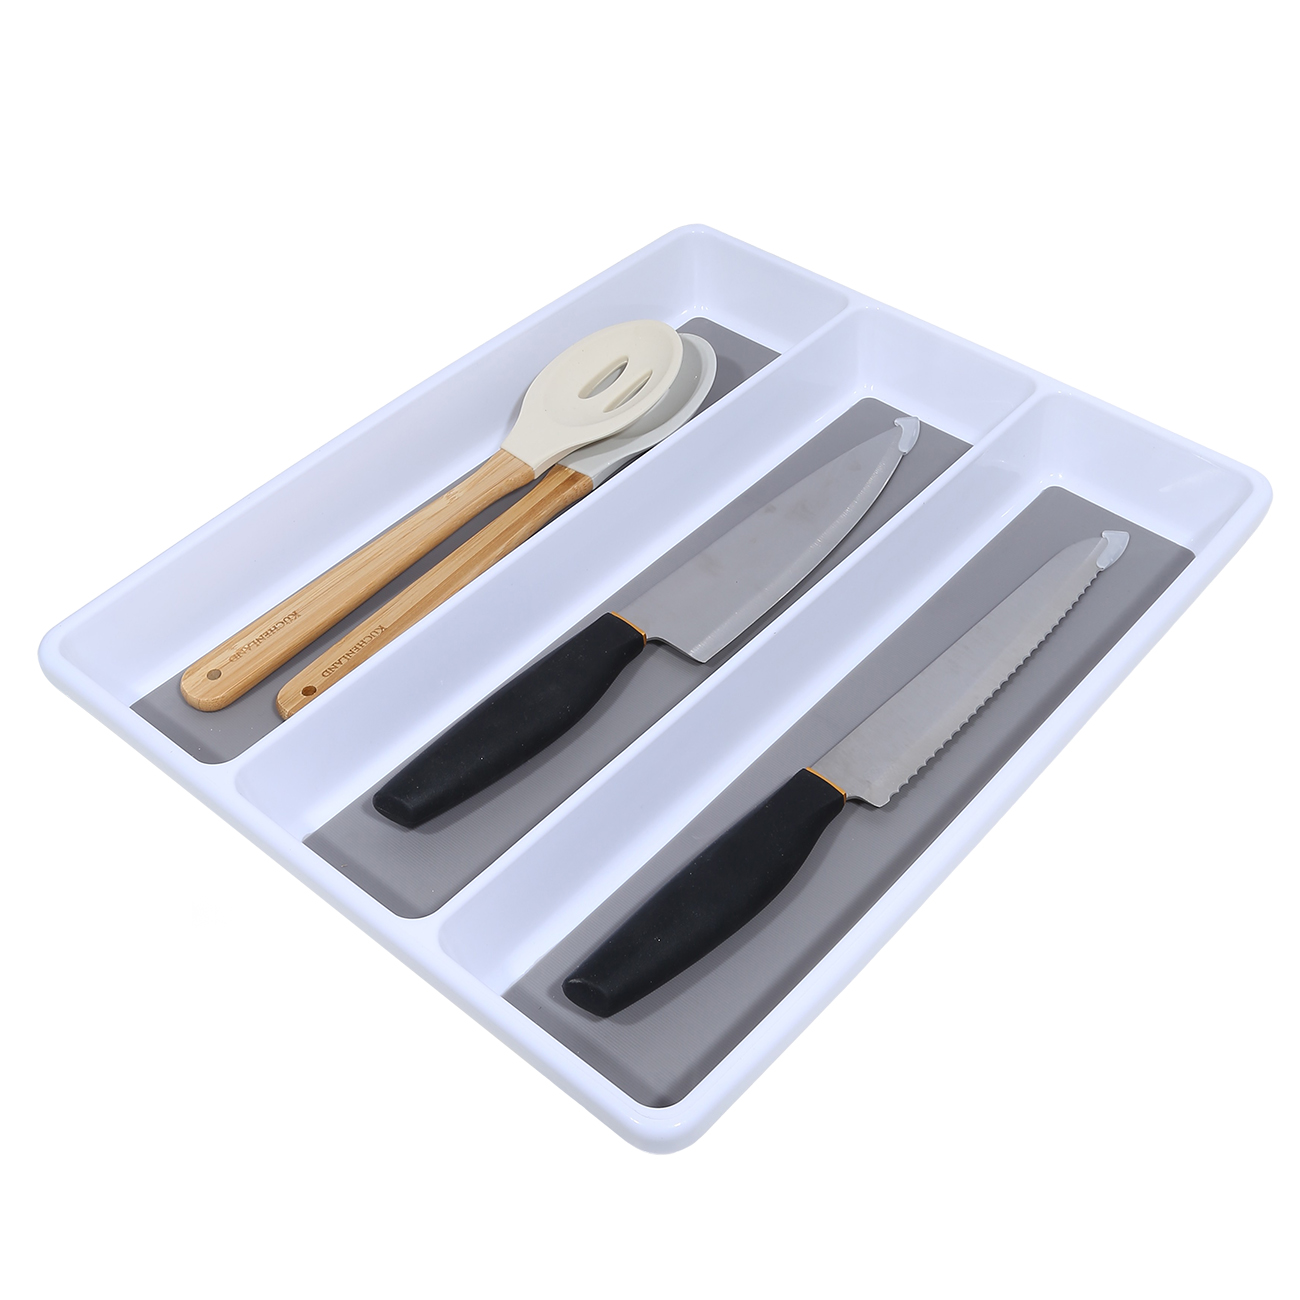 Kitchen accessories tray, 40x33 cm, 3 units, plastic / rubber, white-grey, Non-slip изображение № 3